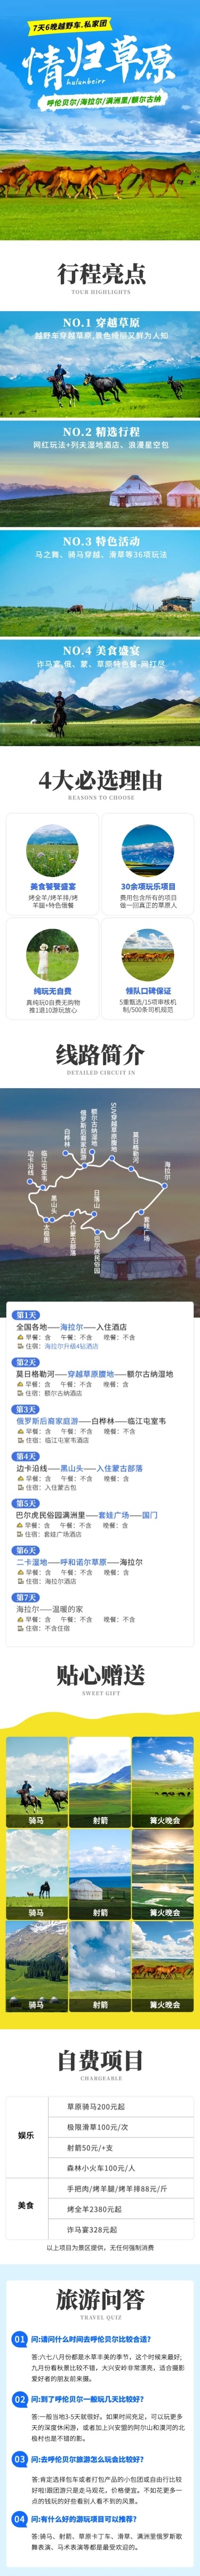 内蒙古华北草原跟团游旅游详情页